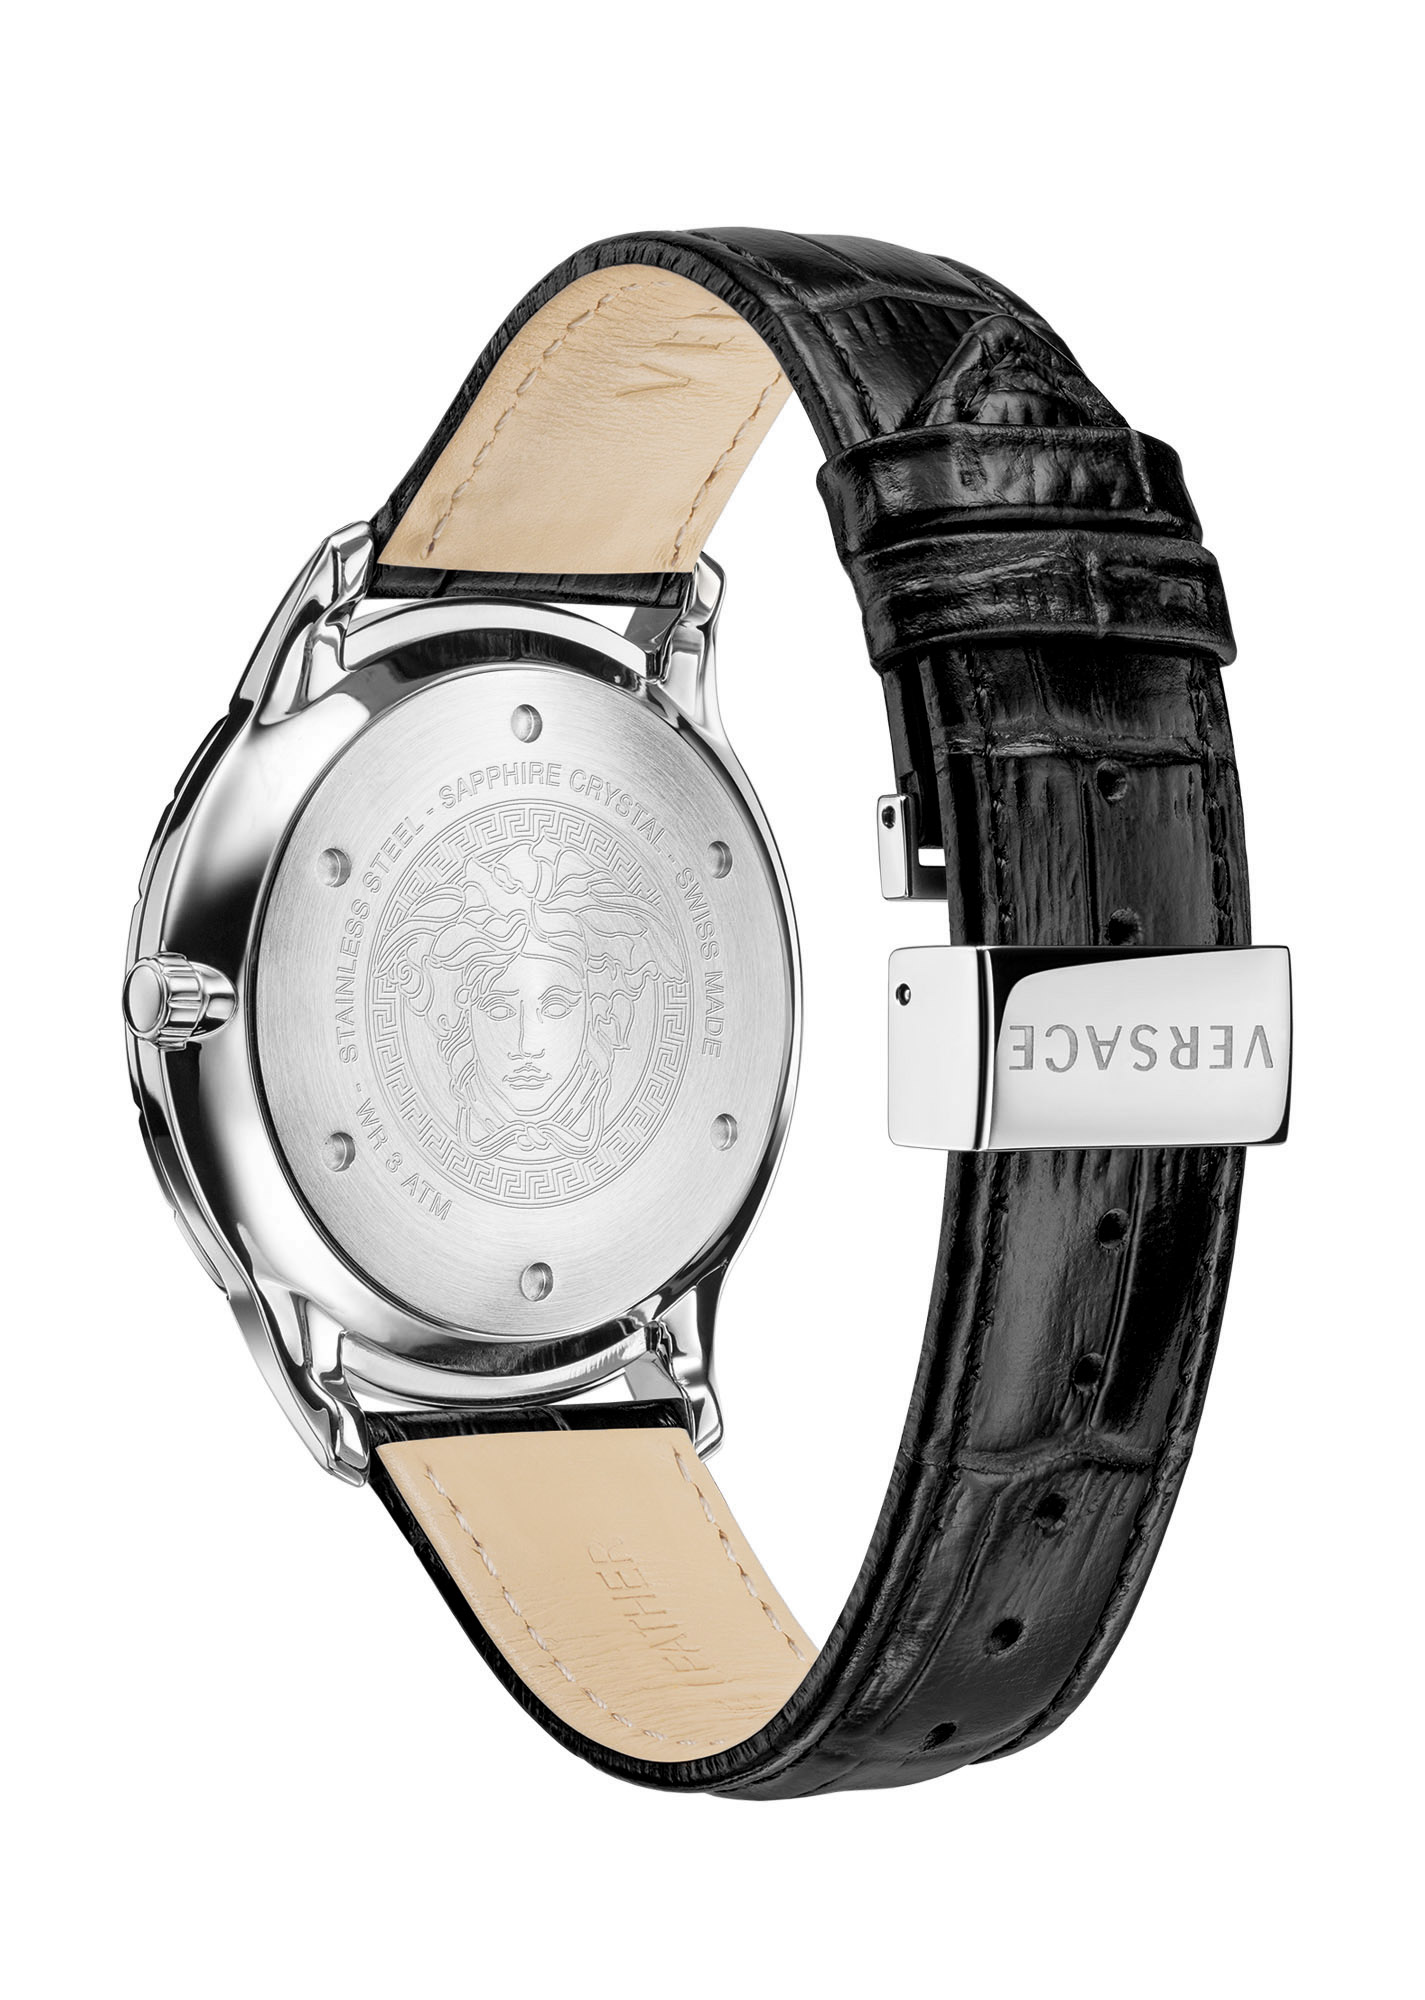 Versace Men's Watch Univers 43mm VE2C002 21 | Watchroom24